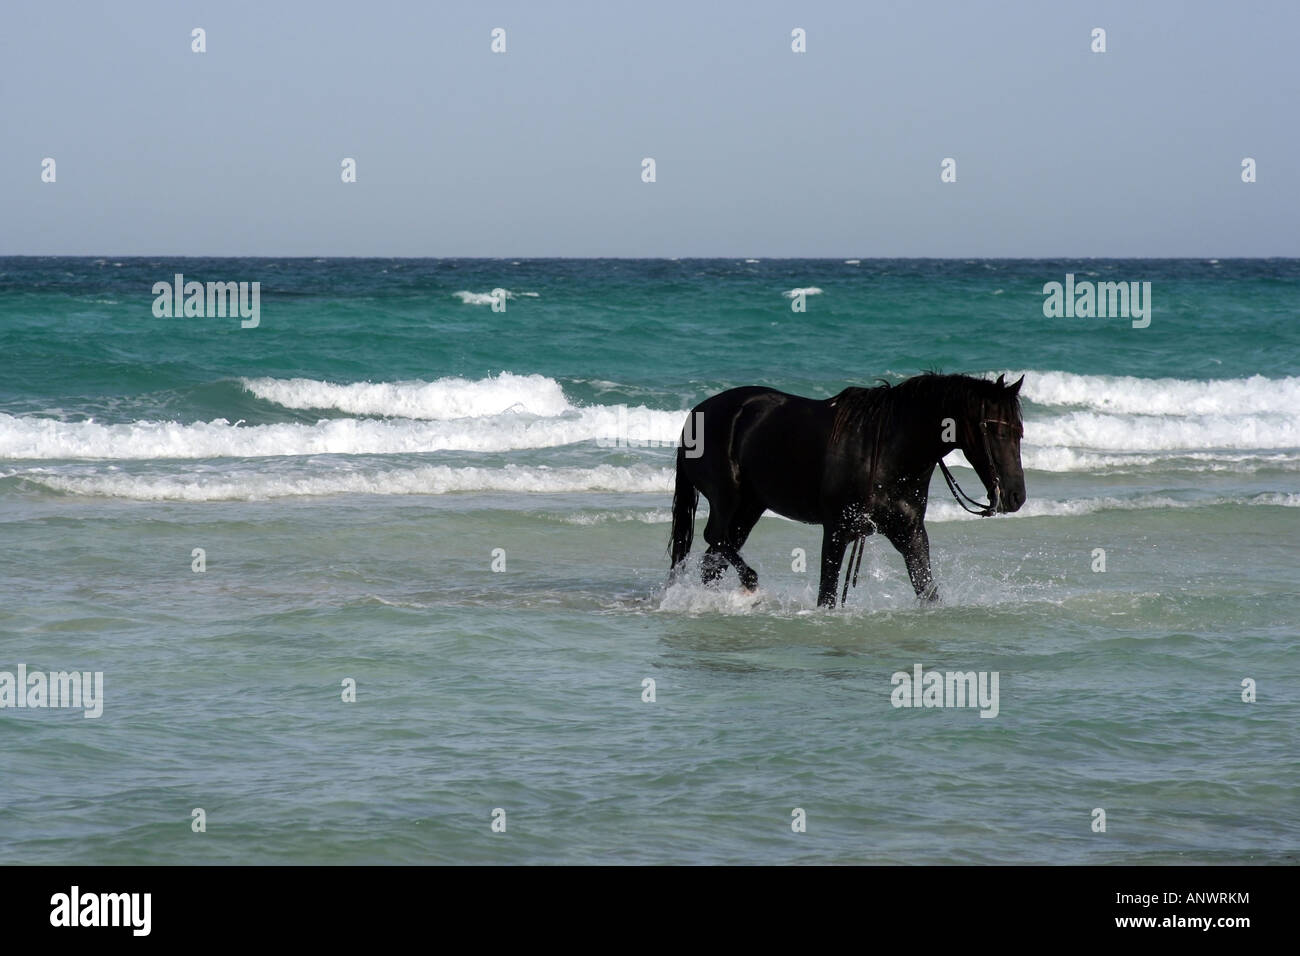 Black horse in the sea on the beach in Djerba, Tunisia. Stock Photo